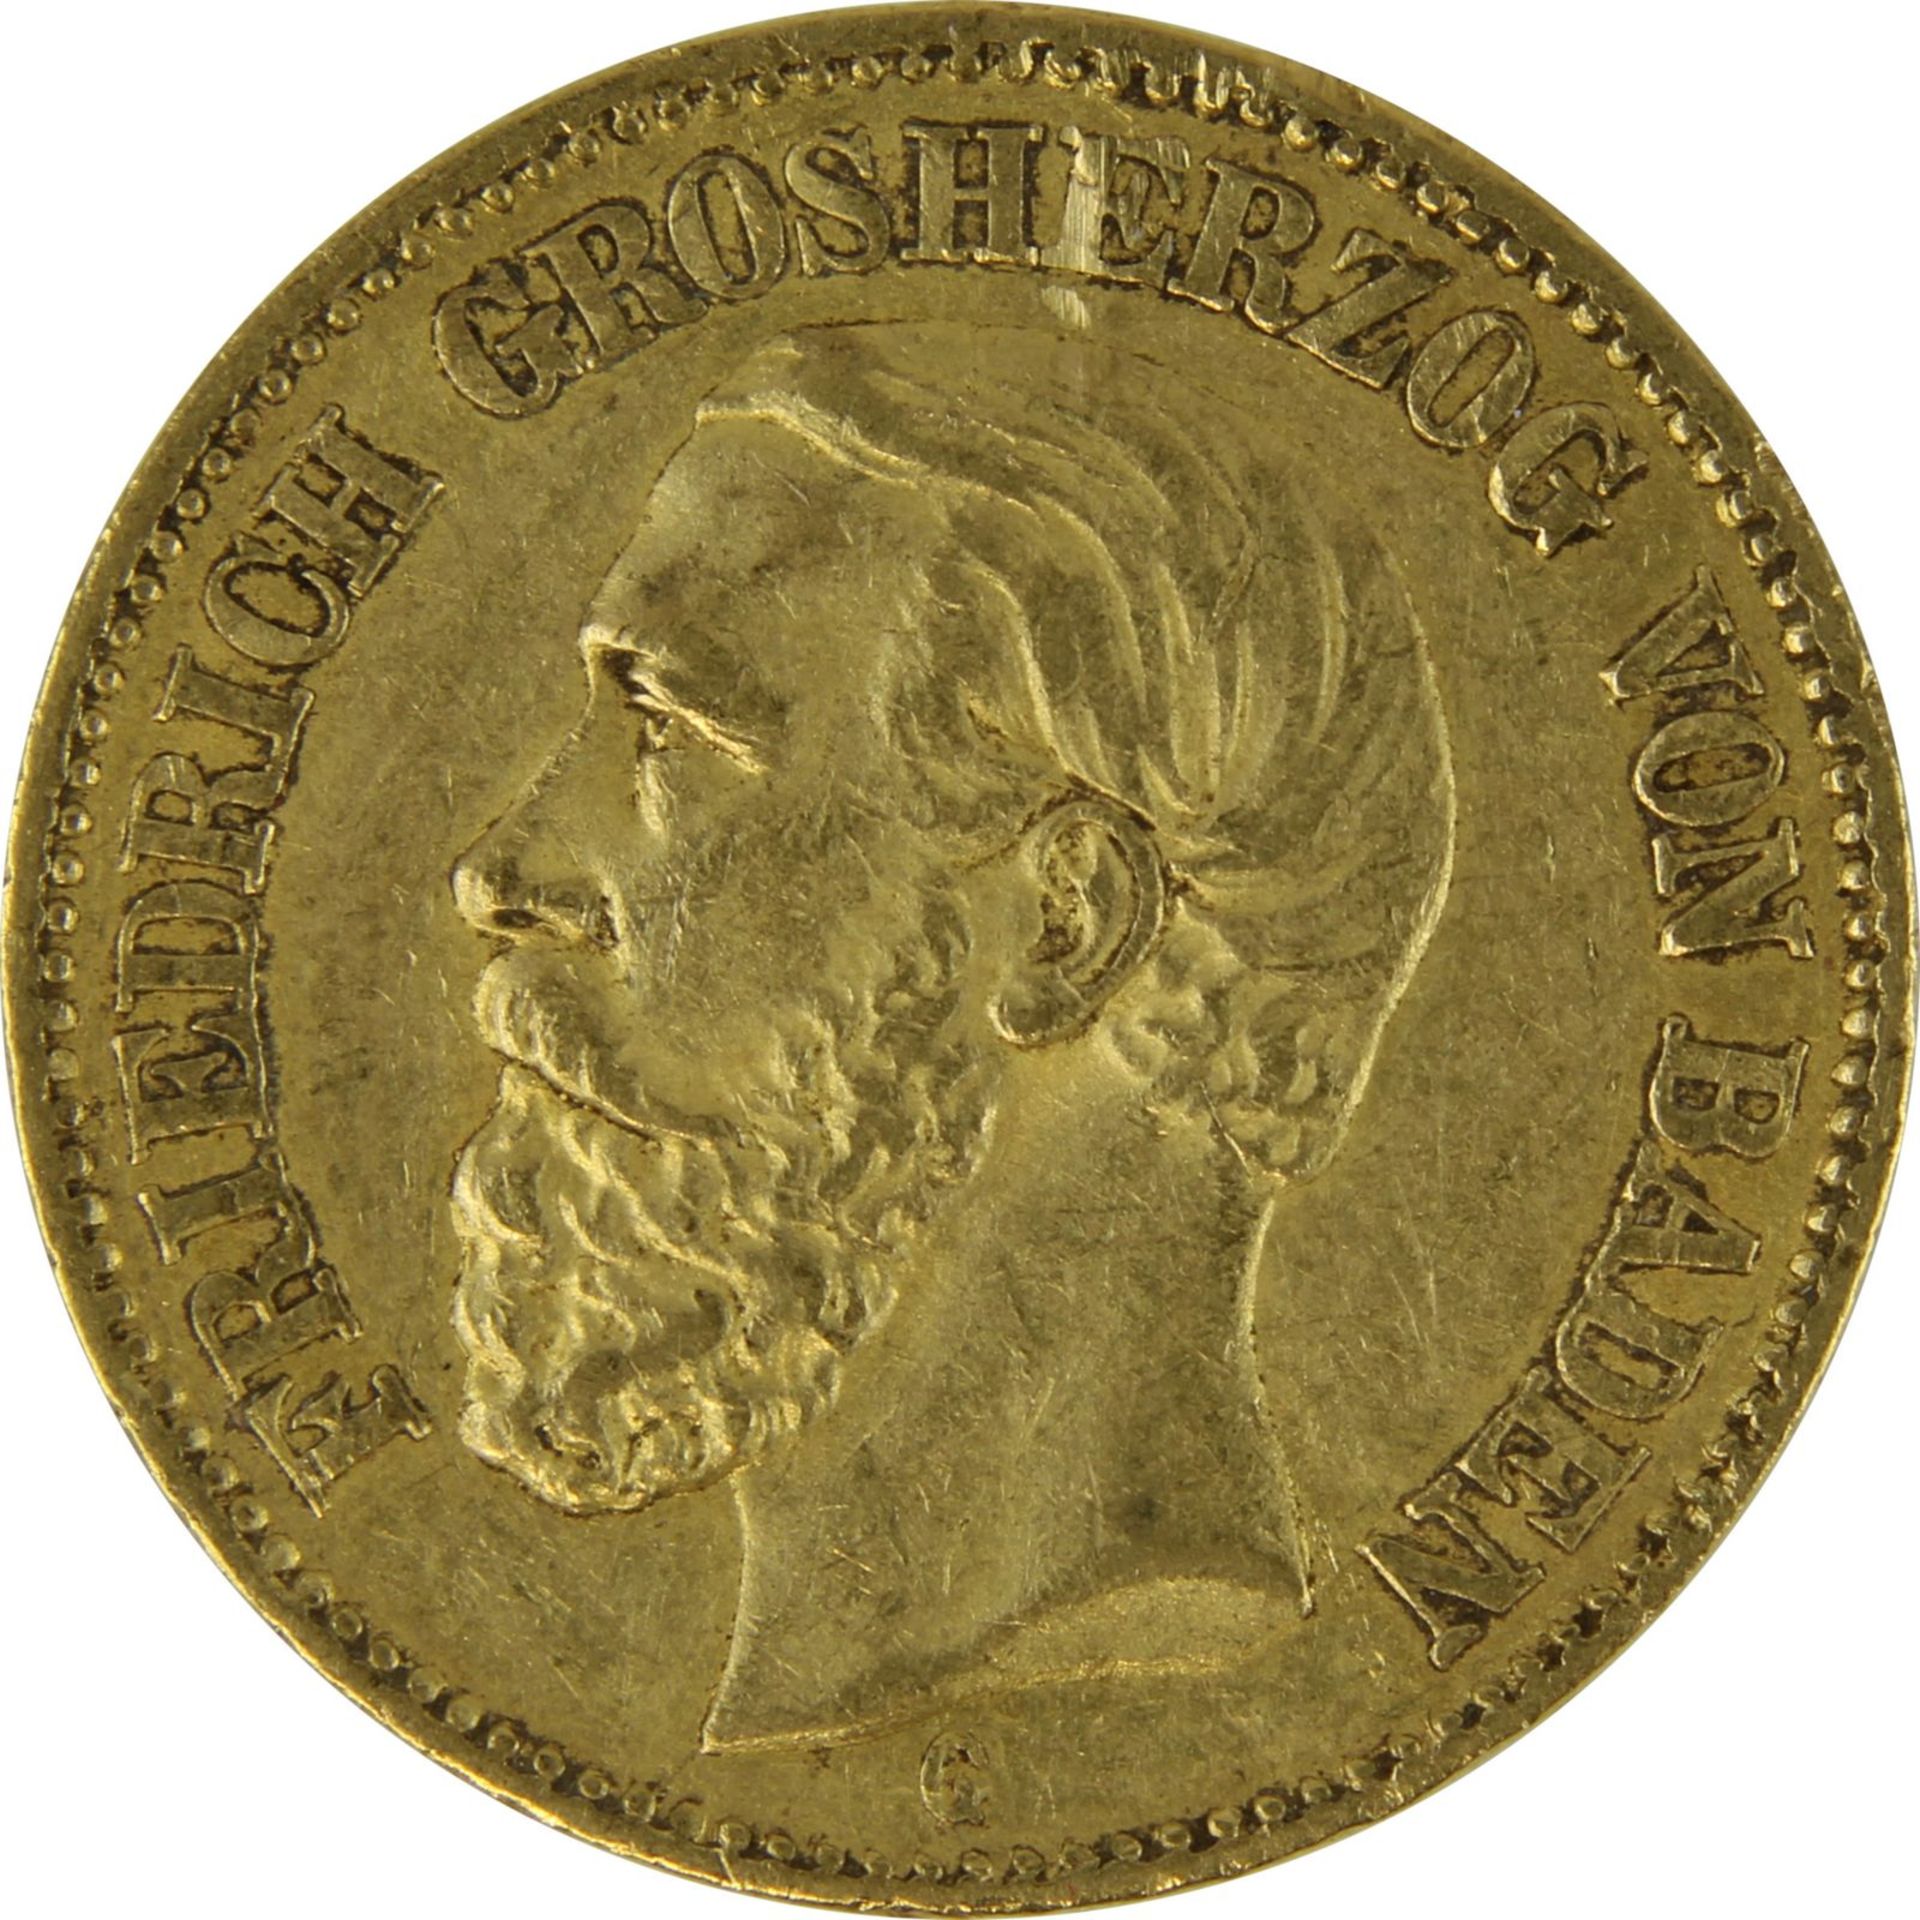 Goldmünze zu 20 Mark, Baden - Deutsches Reich 1874, Avers: Kopf Friedrich Grosherzog von Baden - Image 2 of 3